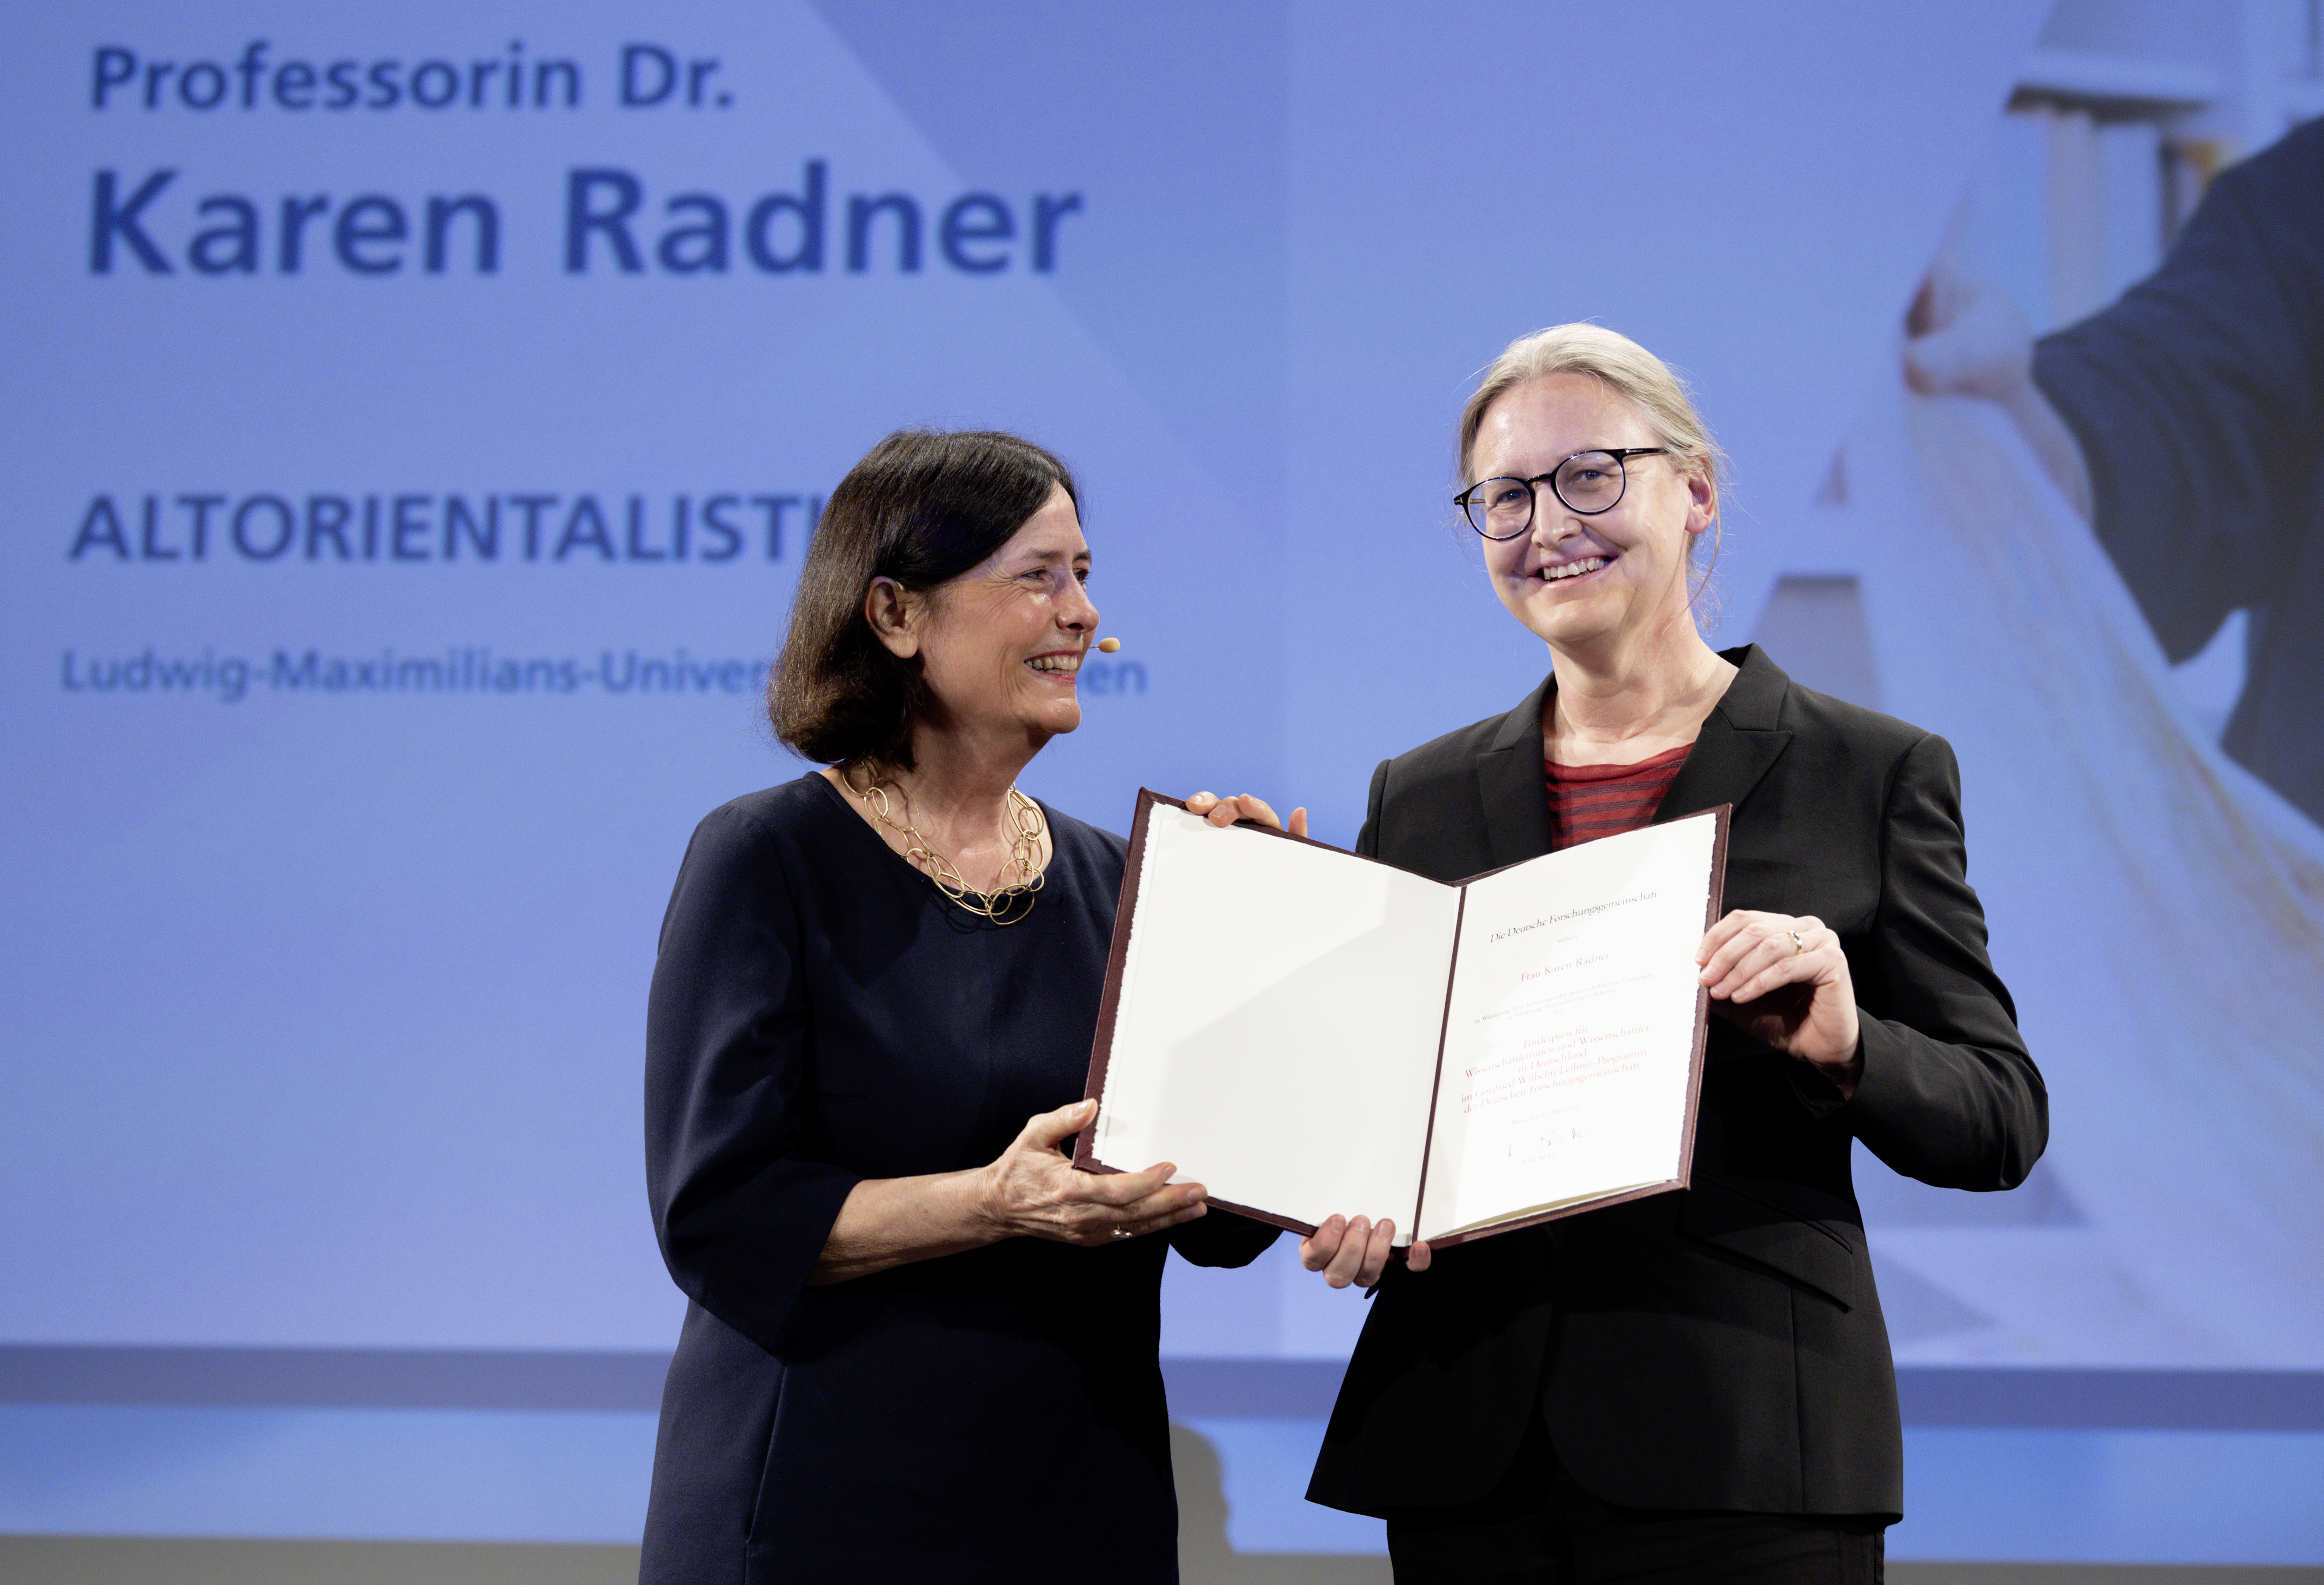 Preisverleihung an Prof. Dr. Karen Radner